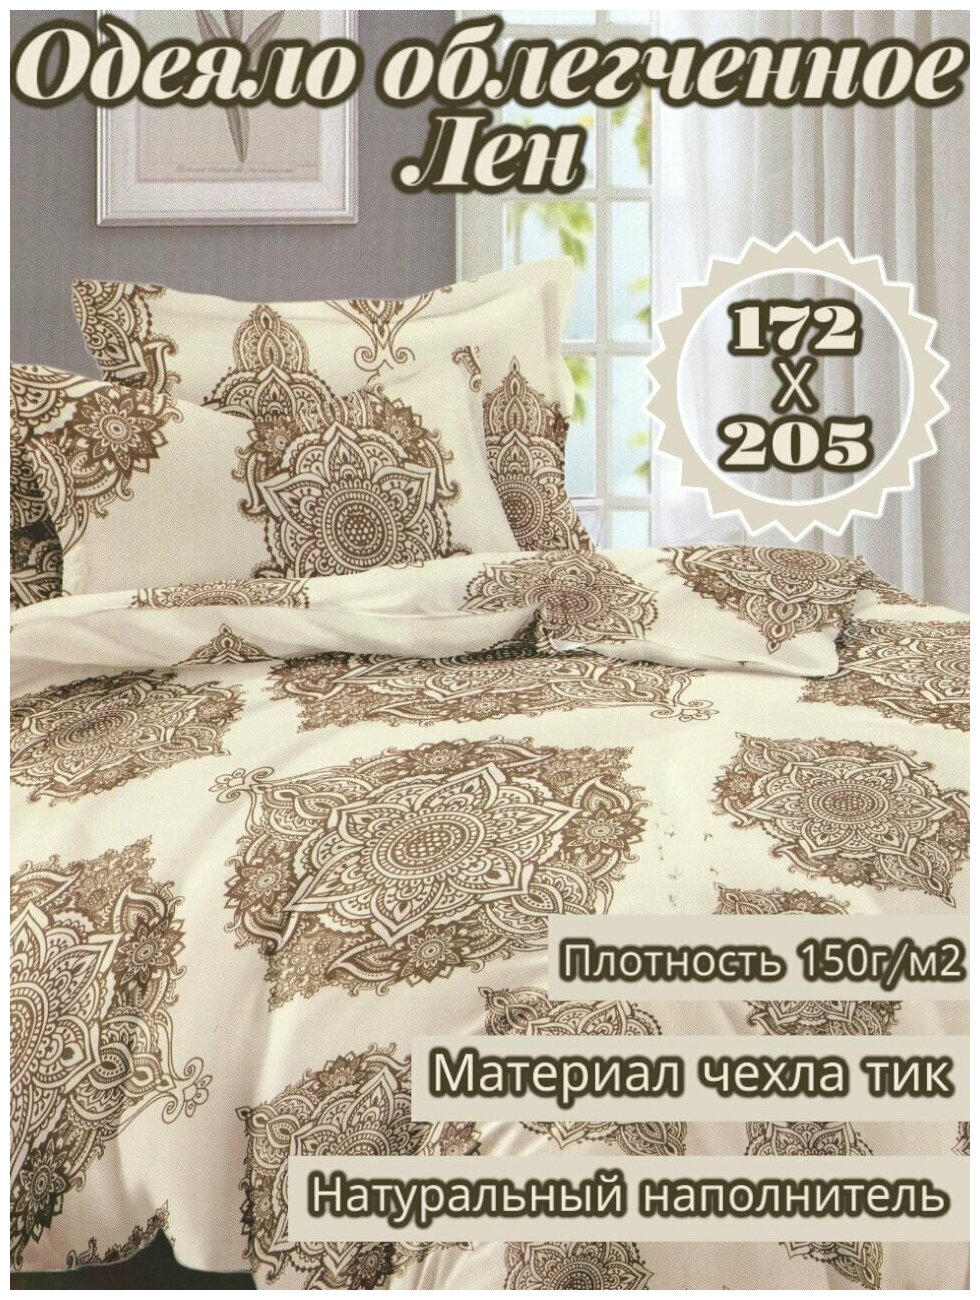 Одеяло 2 спальное 172х205 одеяло лен облегченное - фотография № 1